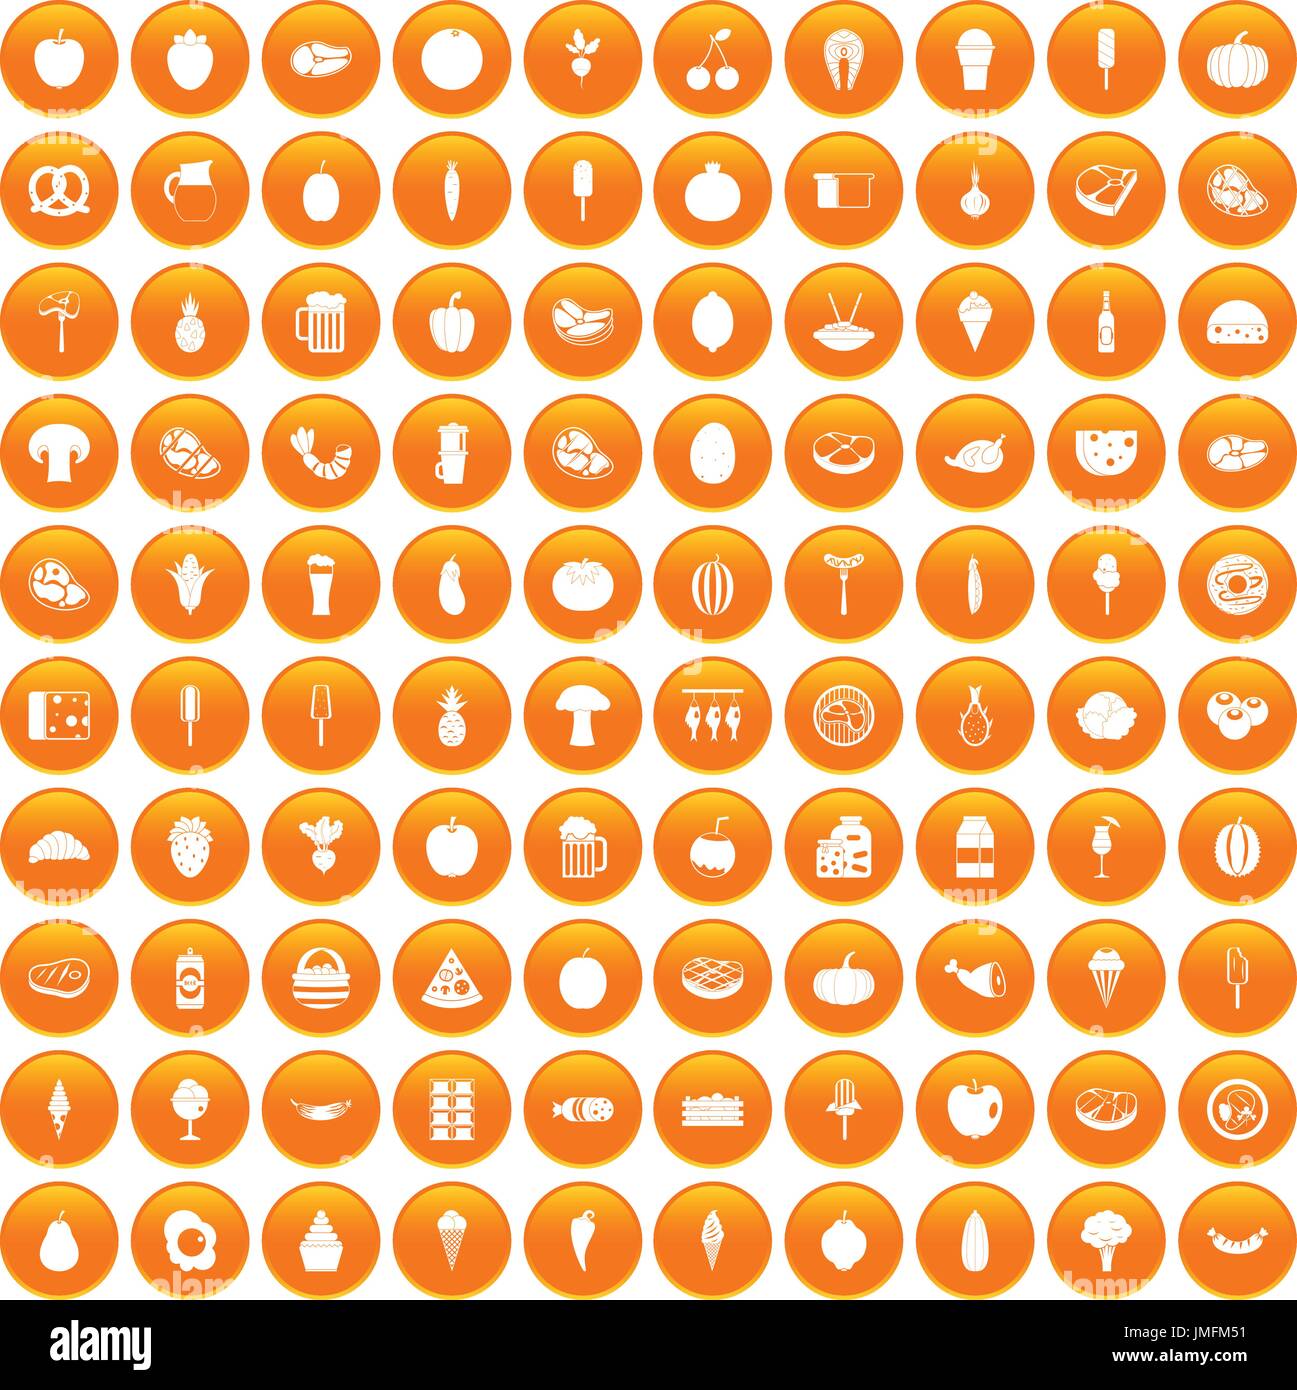 100 food icons set orange Stock Vector